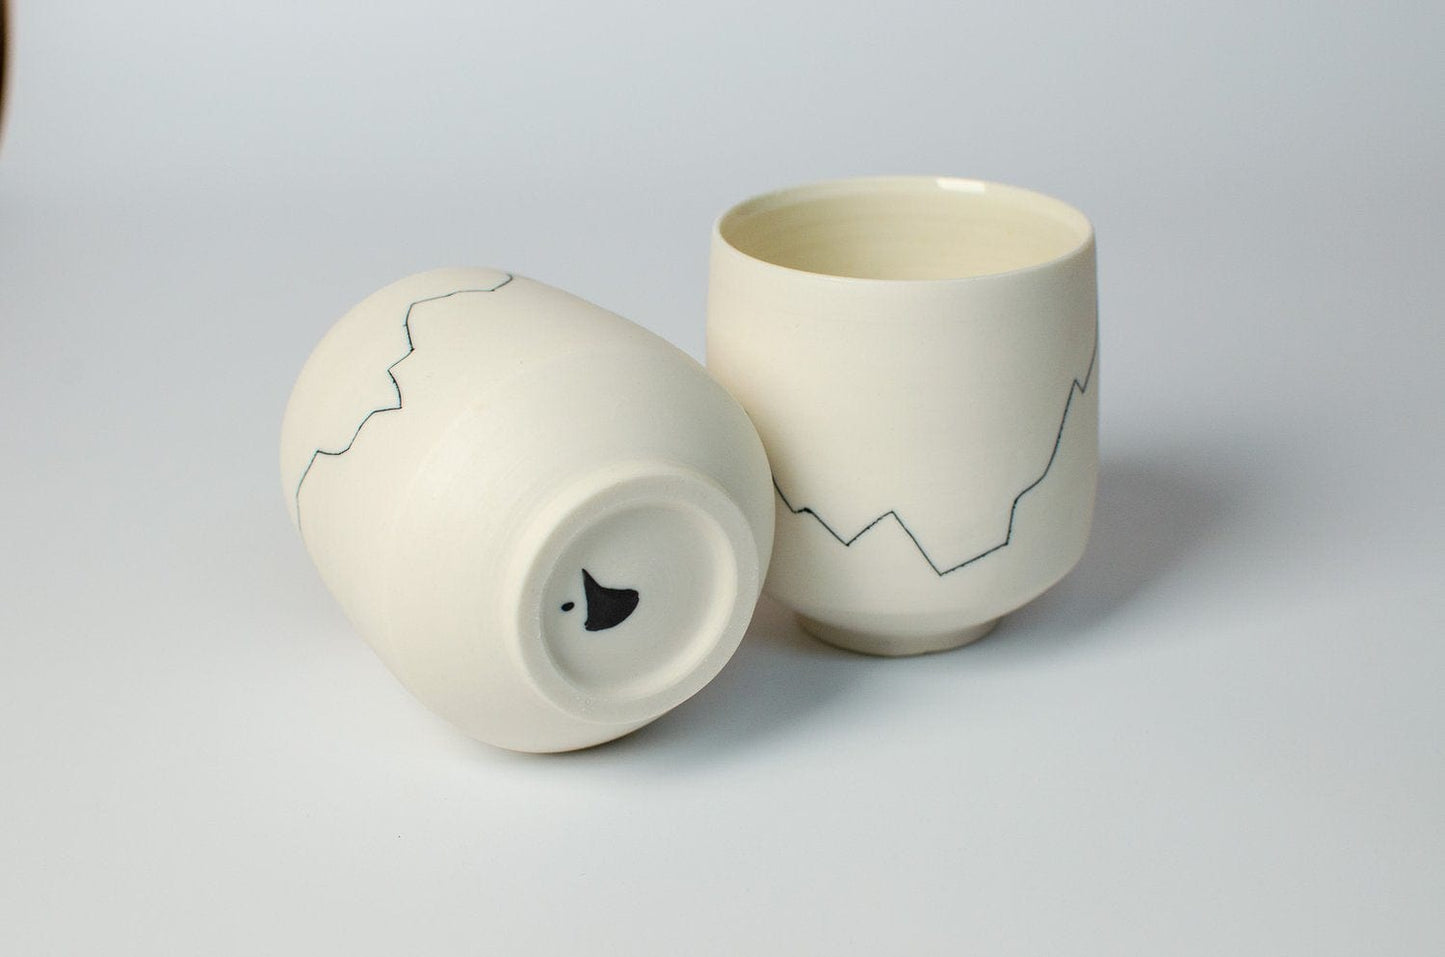 Nicholas Dover Ceramics Porcelain Cup with Inlaid 'Seismograph' Line